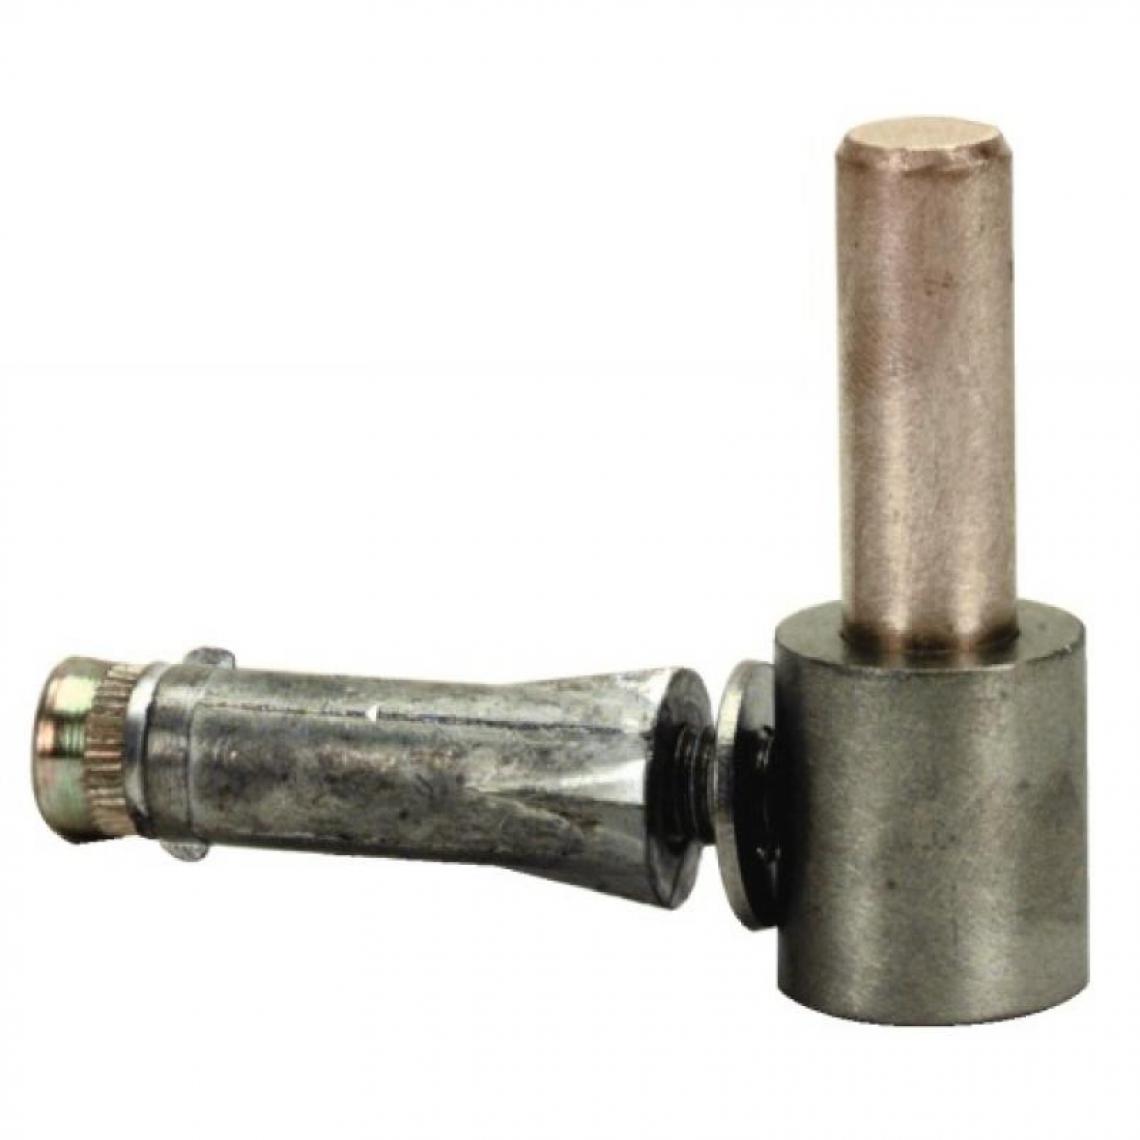 Torbel Industrie - Gond à vis métaux Inox 316 avec cheville axe Ø 16 - Charnière de fenetre